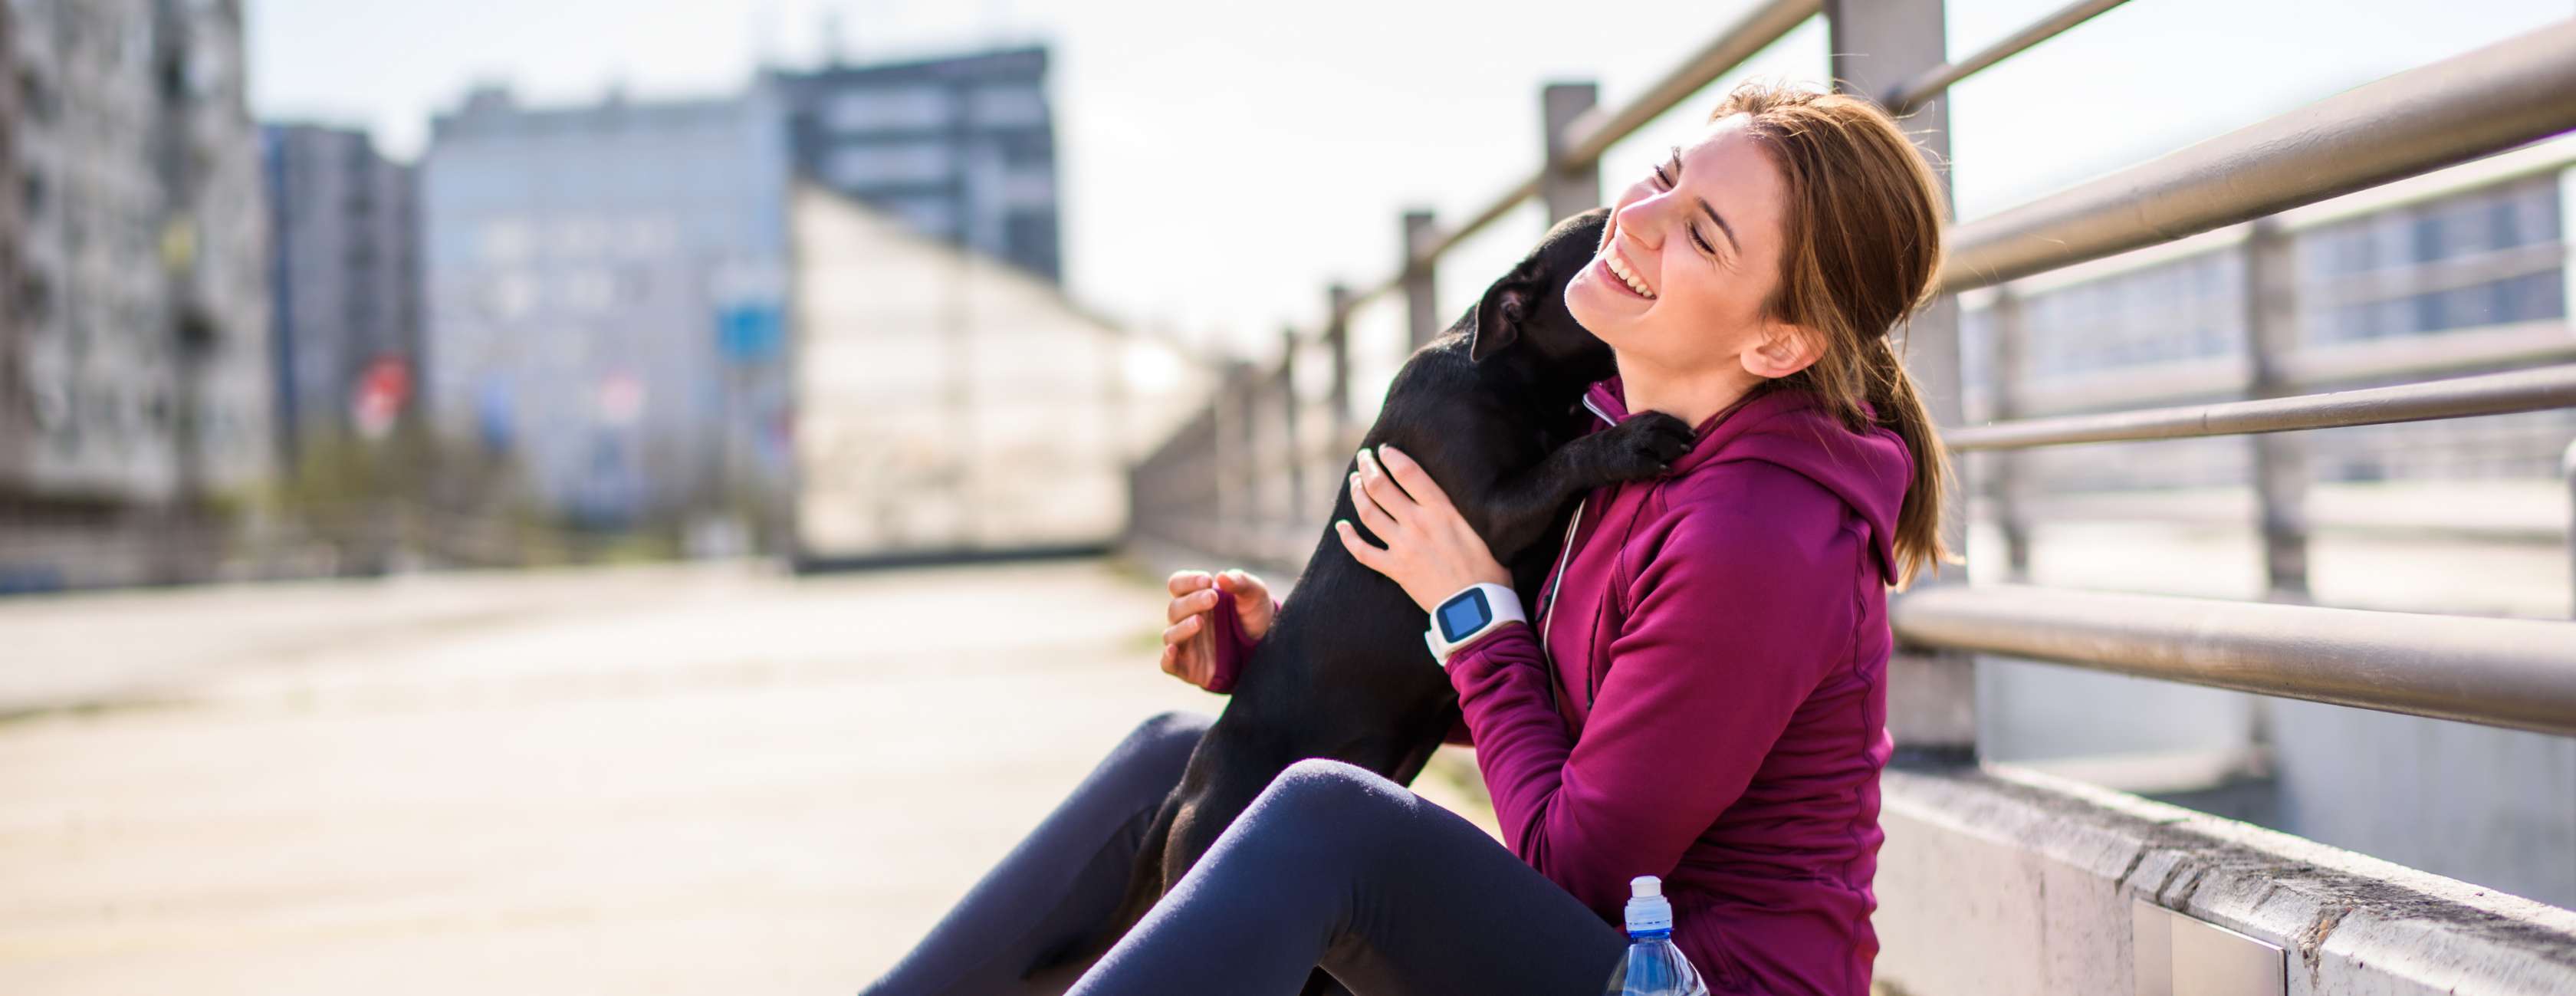 Allianz - Hunderassen für Anfänger: Sitzende Frau spielt mit ihrem Hund